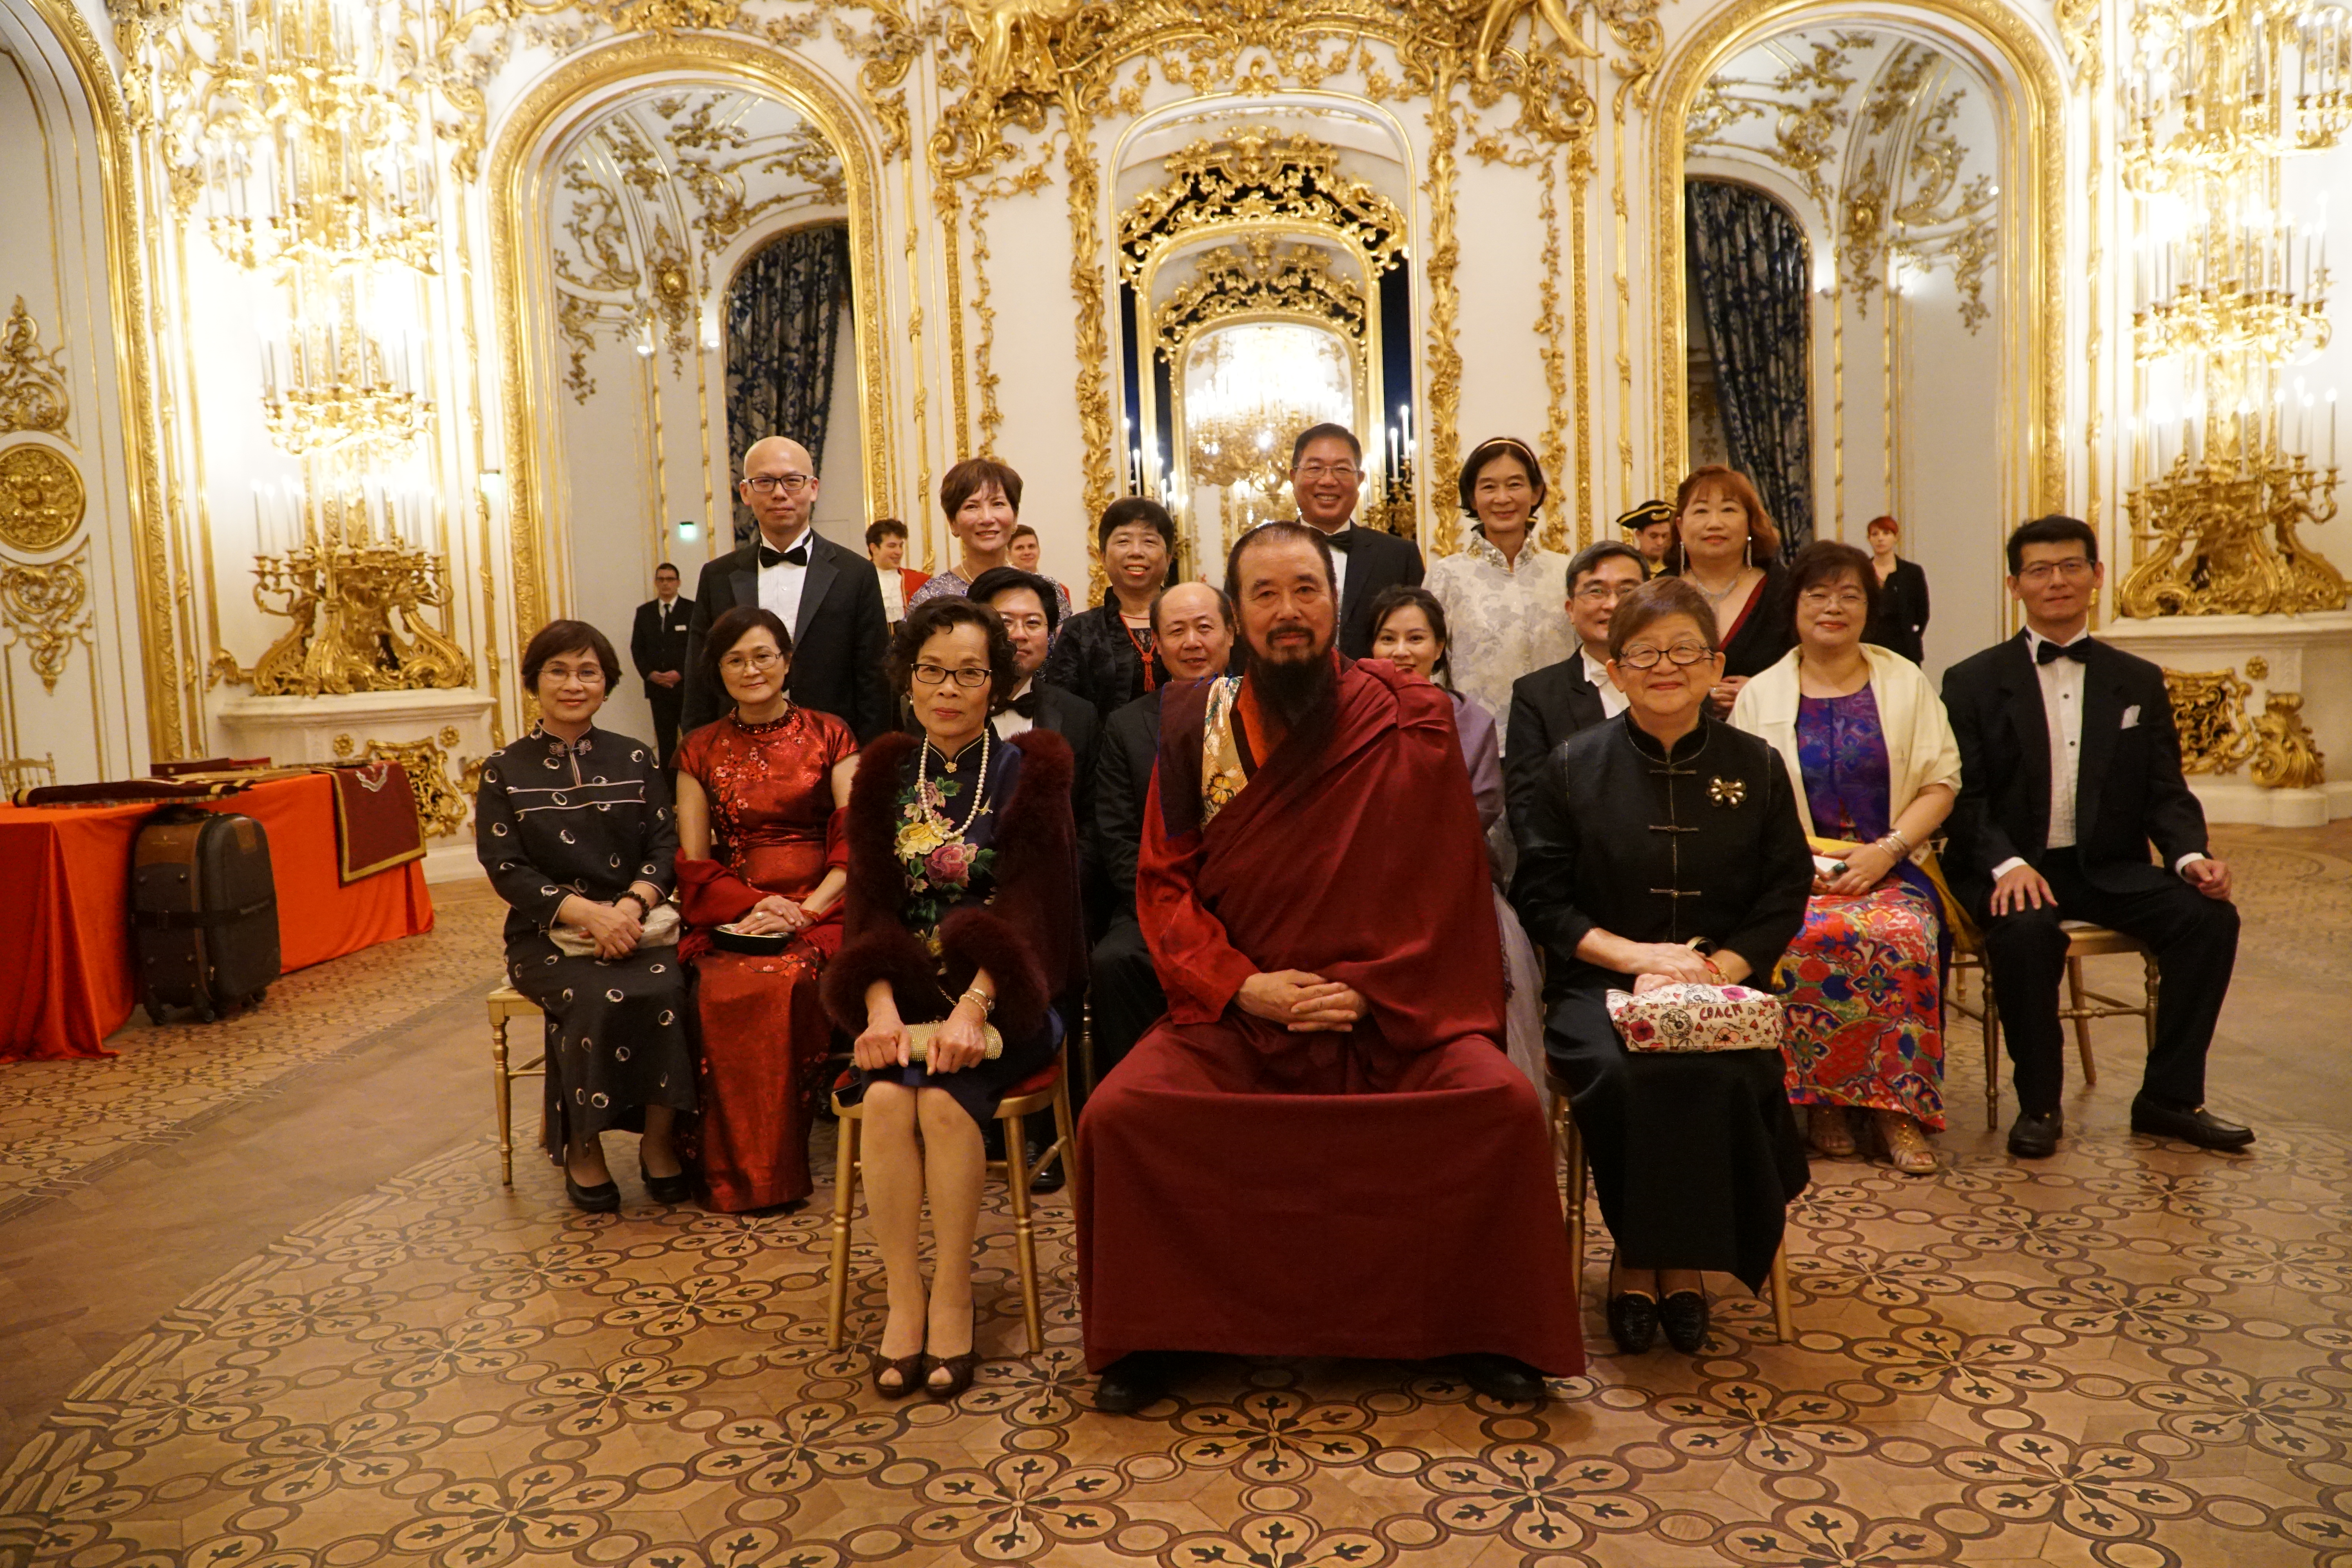 熱烈慶賀本會指導上師榮獲由喬治亞共和國所冊封王公貴族子爵爵位 世界佛教正心會